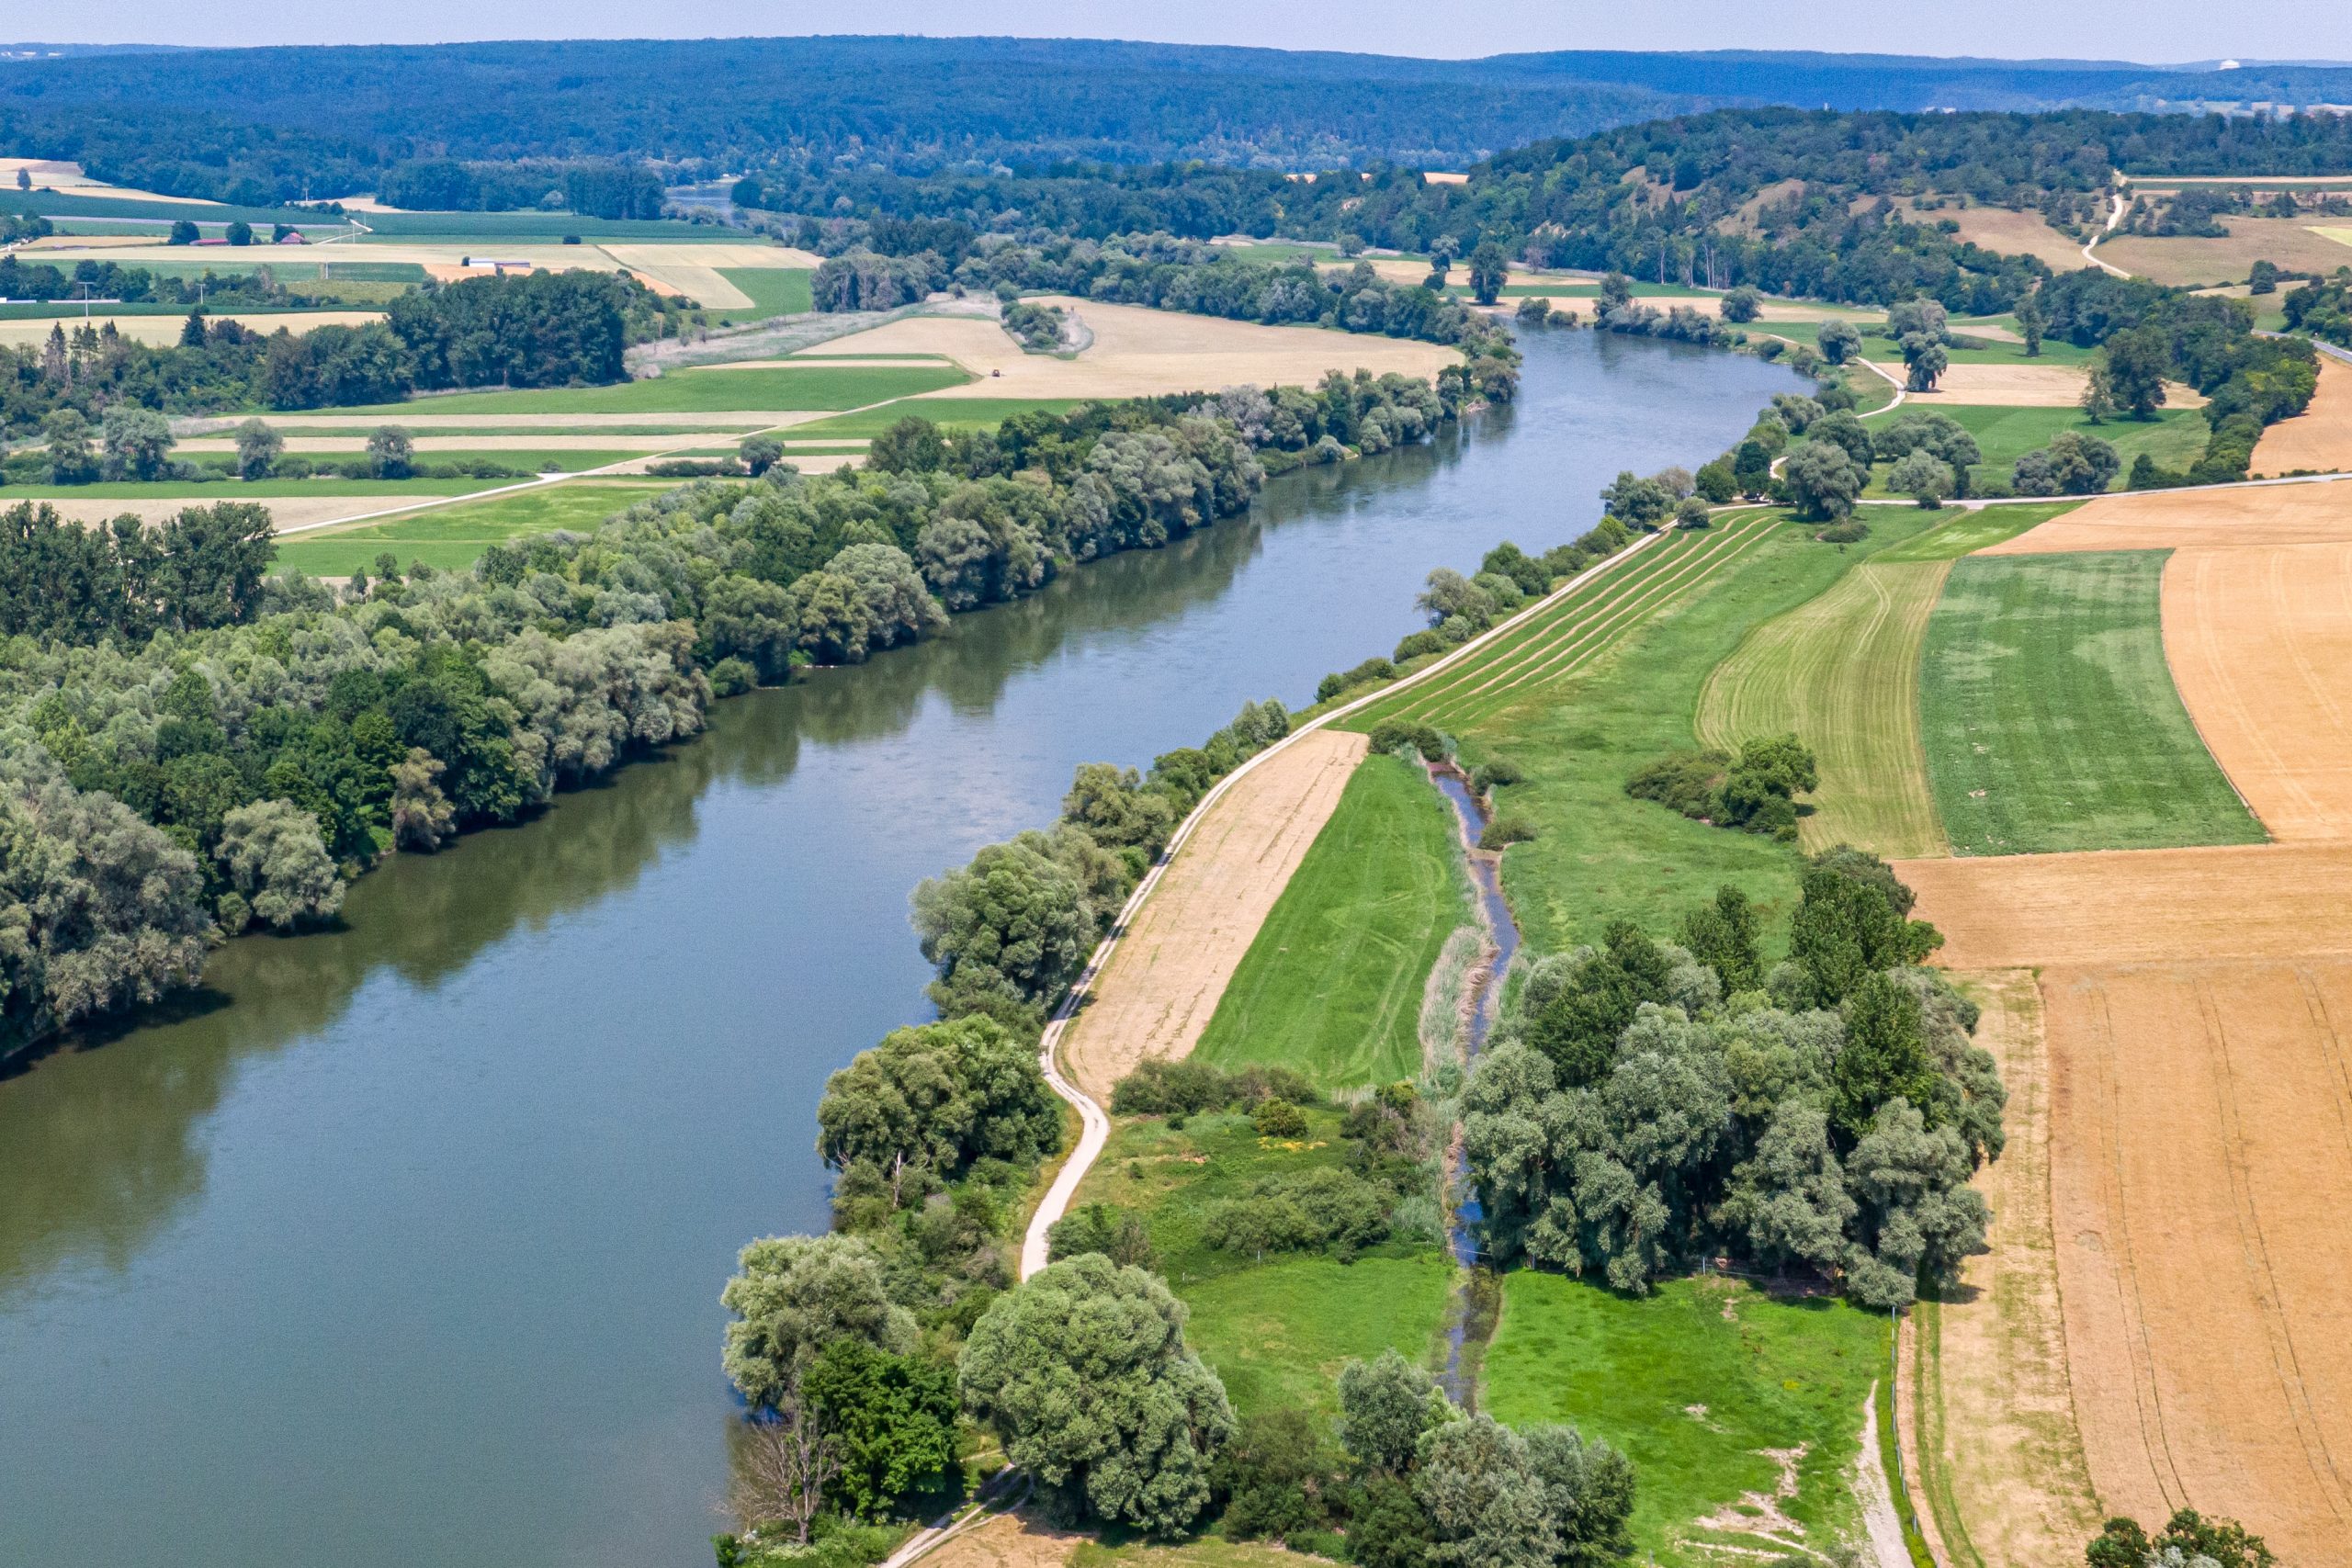 Die Donau in Niederbayern im Landkreis Kelheim. Der sogenannte Donaulimes wurde nun im Rahmen des bereits bestehenden Welterbes „Die Grenzen des Römischen Reiches“ der Unesco mit dem neuen Status ausgezeichnet.